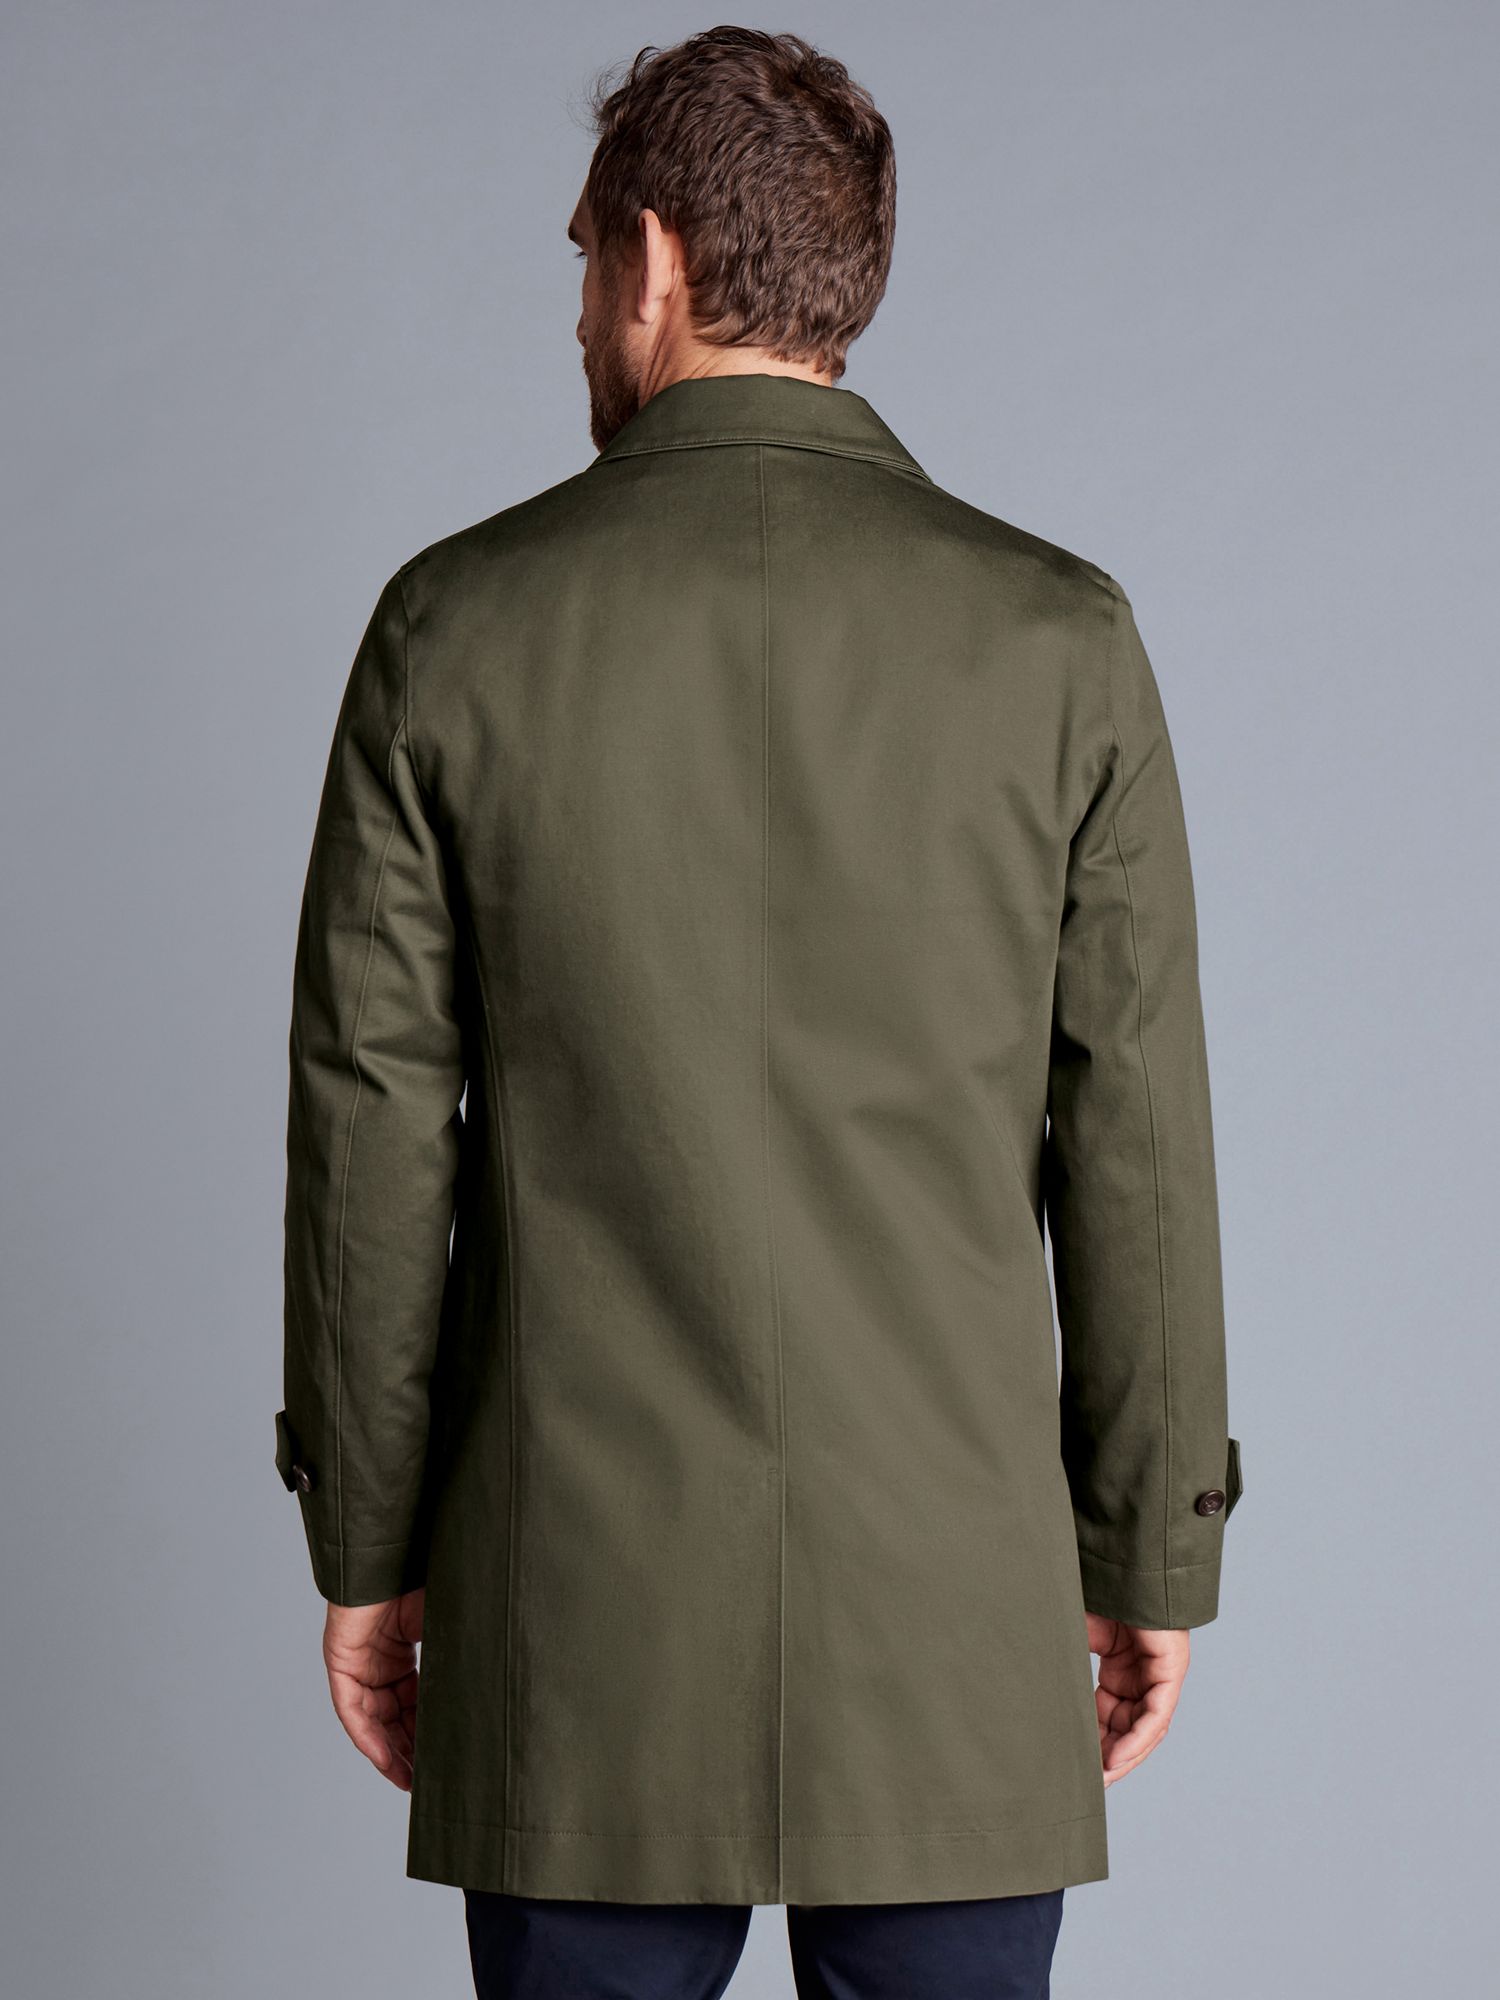 Charles Tyrwhitt Classic Showerproof Raincoat, Dark Olive, 36R